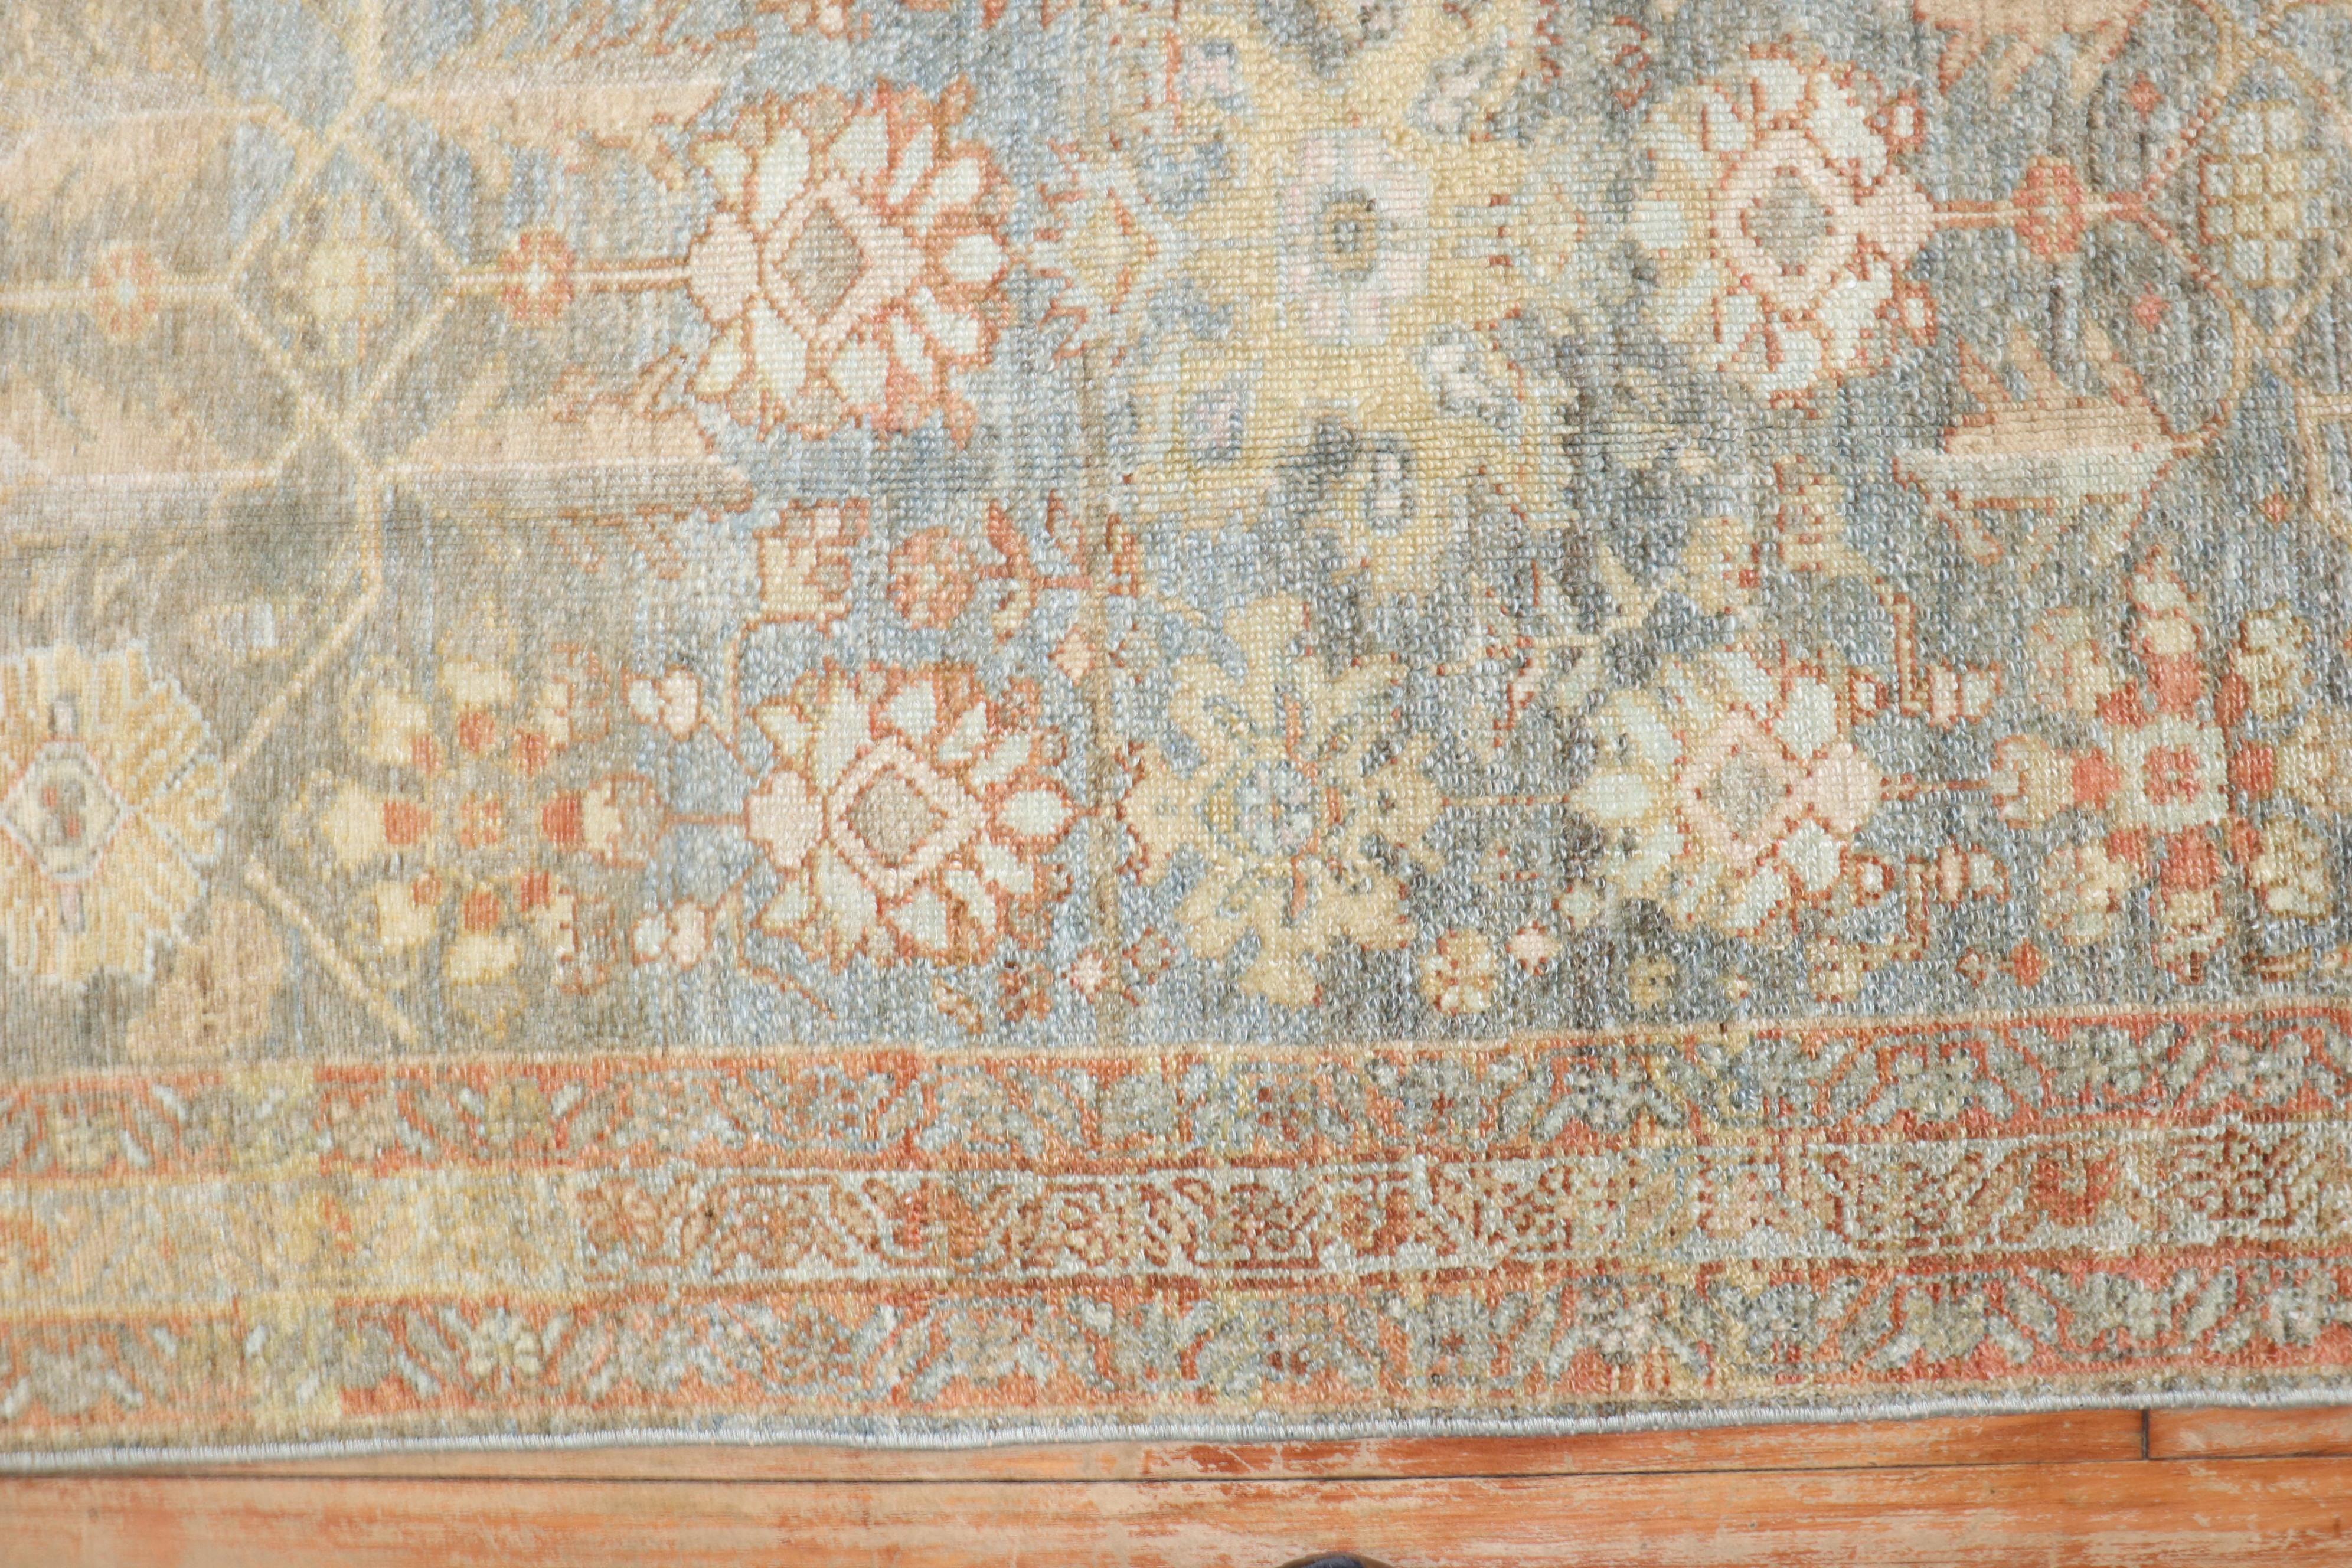 Persischer Malayer-Teppich aus dem frühen 20. Jahrhundert in verwaschenen, neutralen Tönen

Maße: 2'10